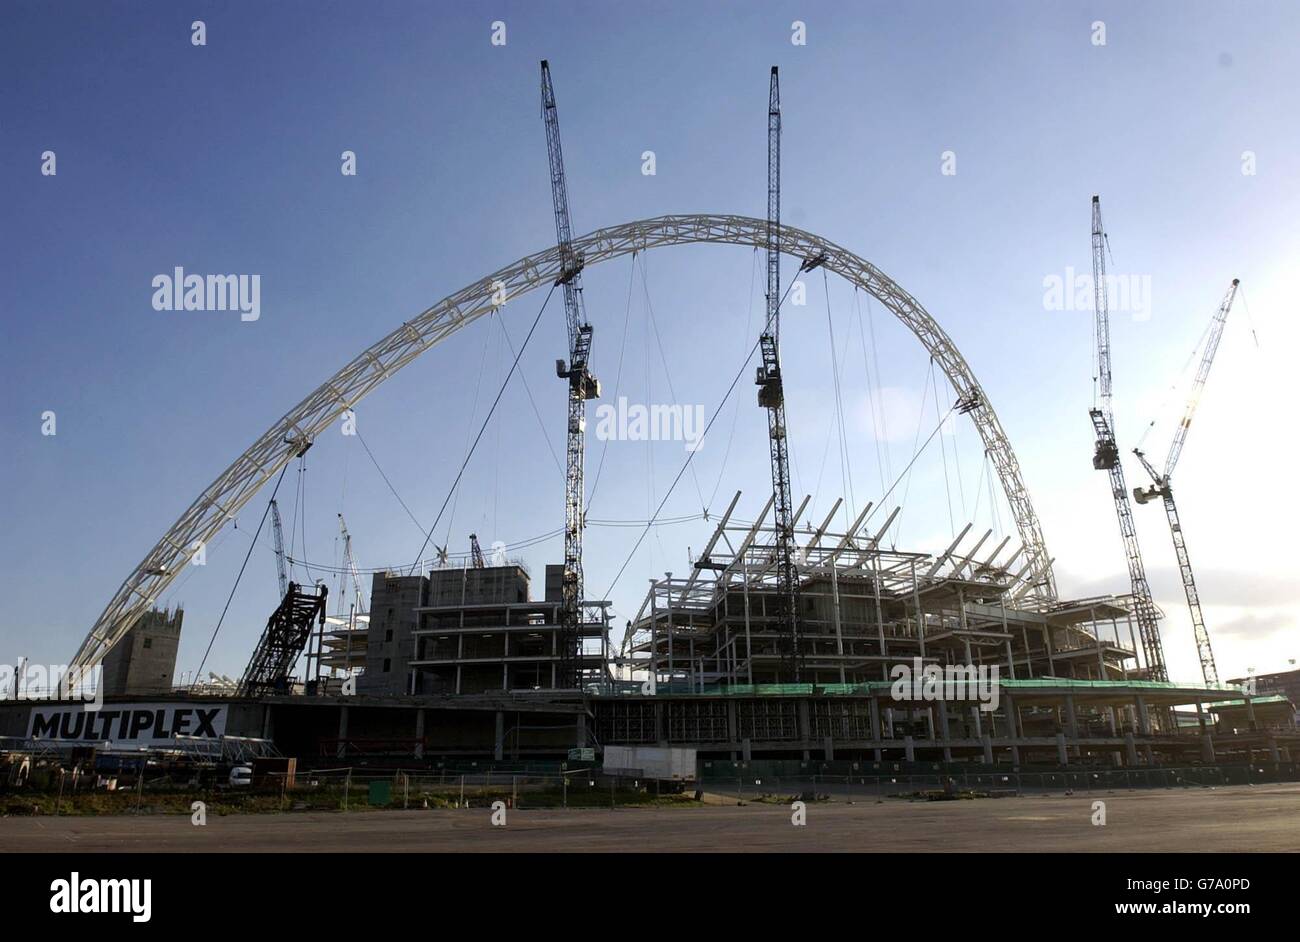 Une vue générale du coucher du soleil sur le nouveau complexe Wembley Stadium dans le nord-ouest de Londres. Le projet qui est actuellement en proie à des problèmes après des litiges contractuels, doit accueillir une "cérémonie de tête" ce soir. Banque D'Images